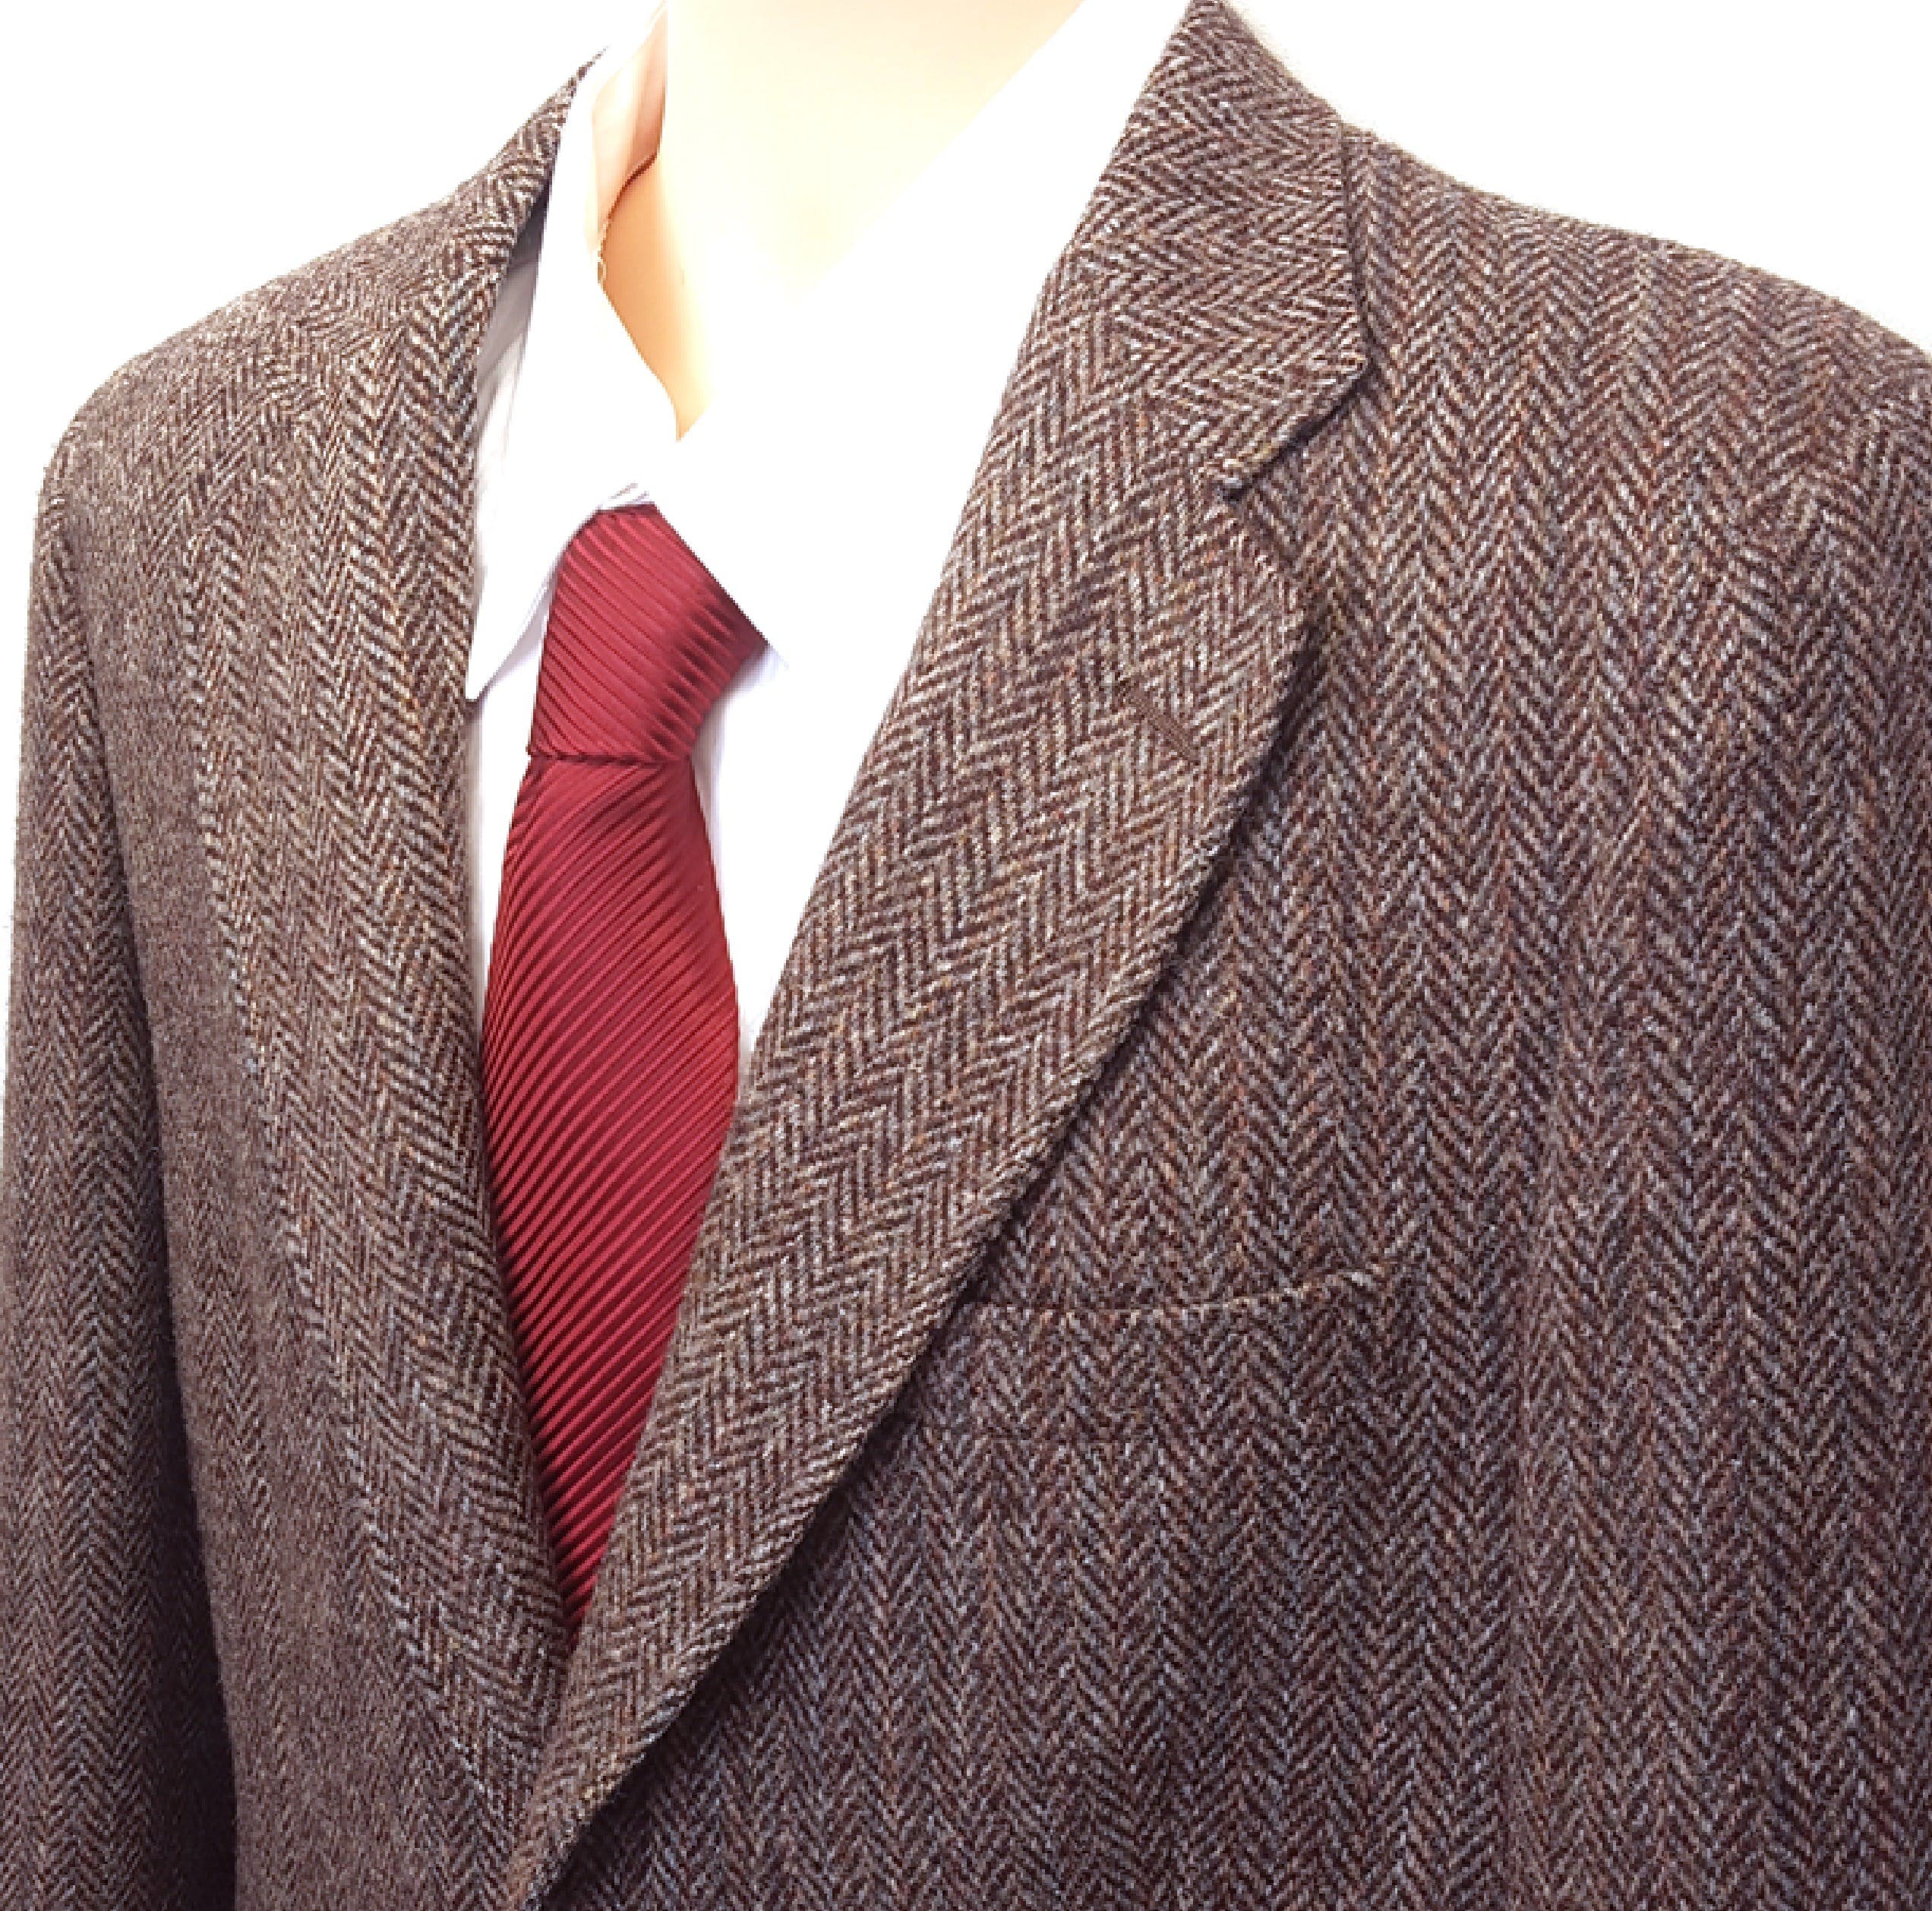 Vintage 70’s 80’s Brown Herringbone Wool Sport Coat by Harris Tweed ...